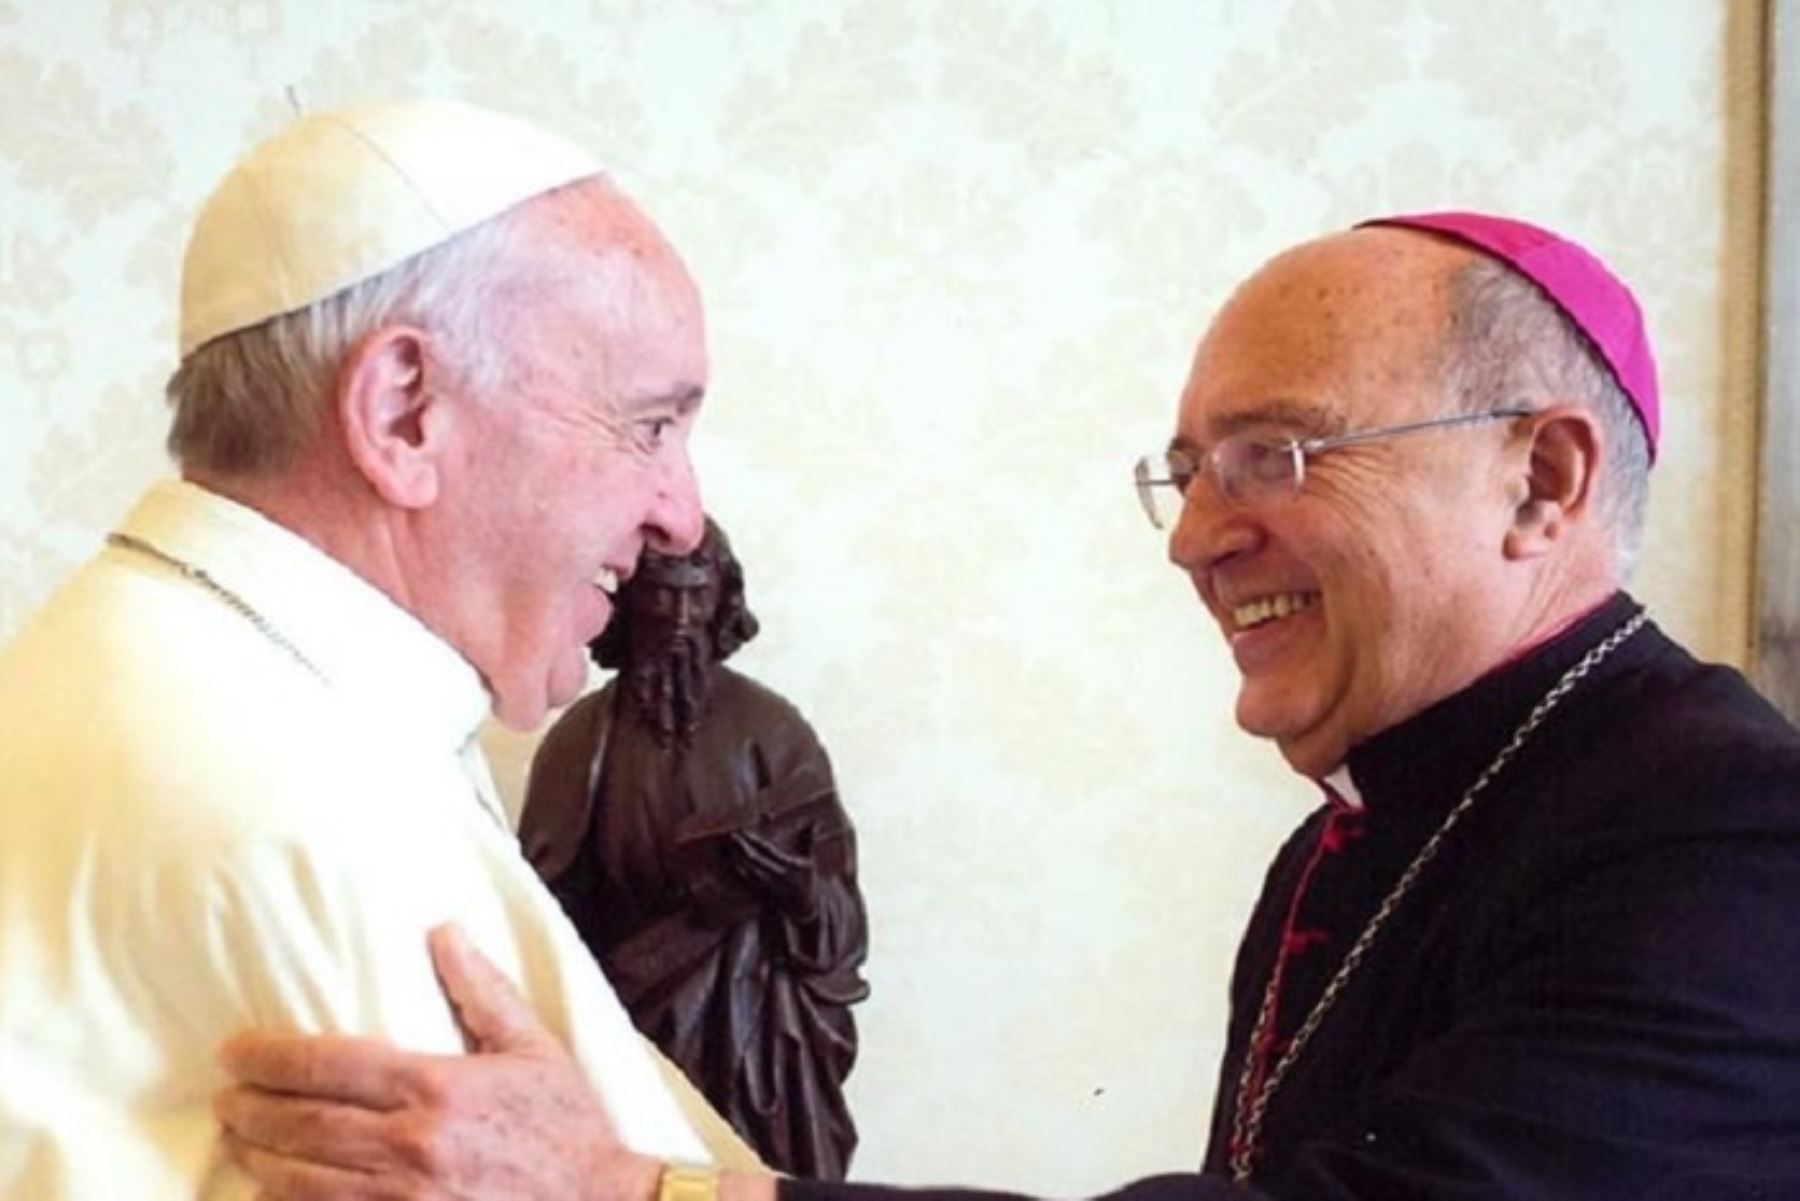 El cardenal Juan Luis Cipriani, arzobispo de Lima, celebró desde Madrid la futura designación de Barreto y refirió que se trata de un reconocimiento a la Iglesia peruana.